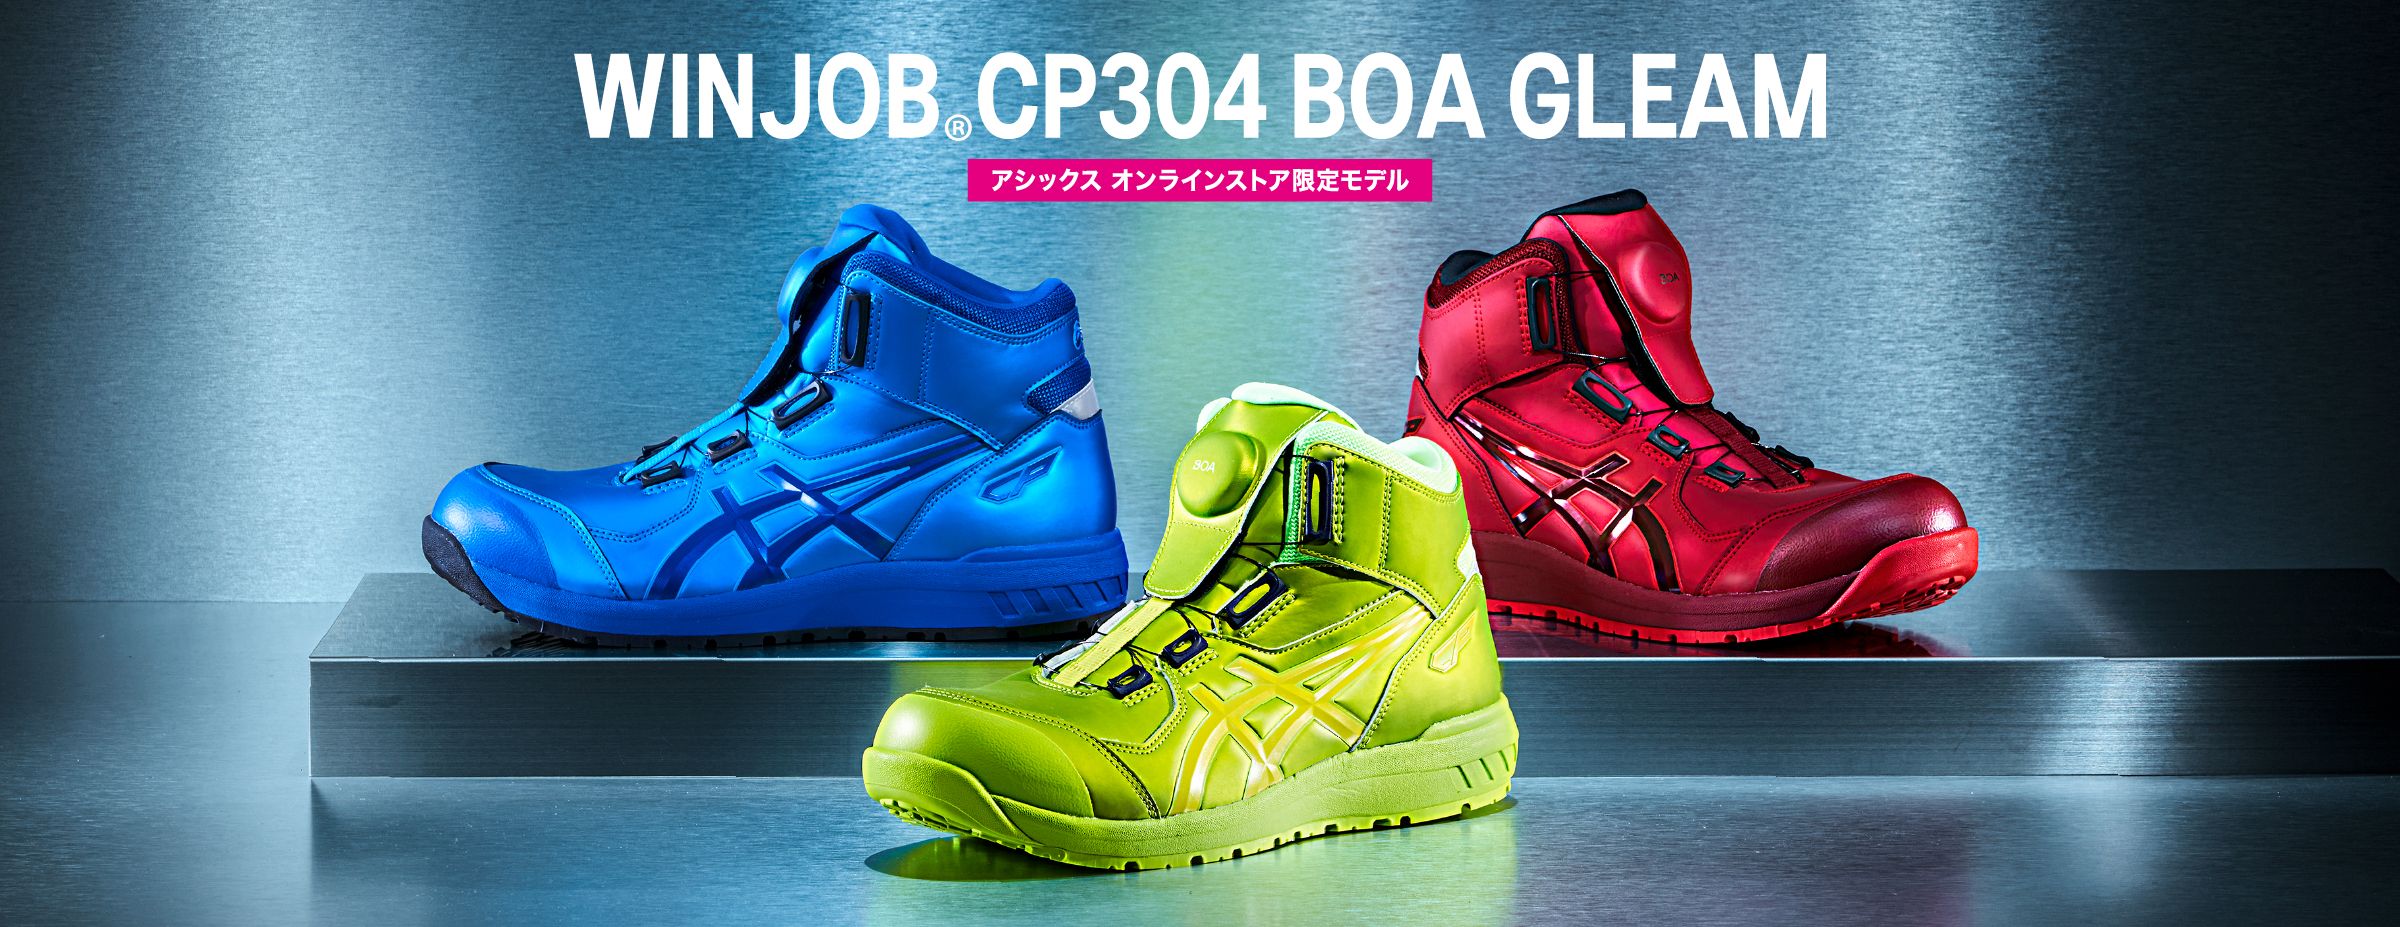 【新品】 アシックス 安全靴 作業靴 26.0 cm オンライン限定カラーFCP302-003